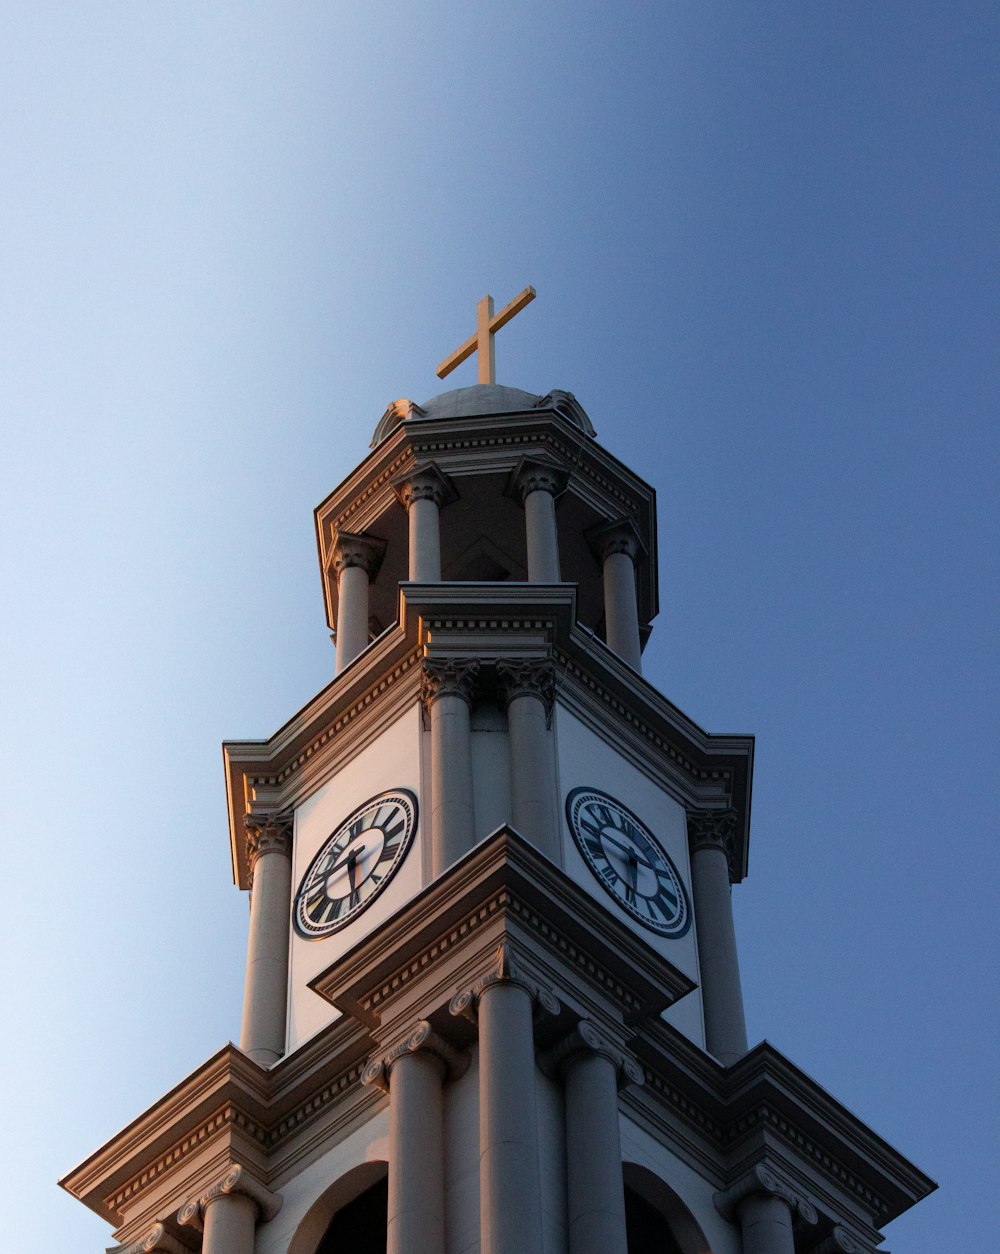 uma torre do relógio com uma cruz em cima dela